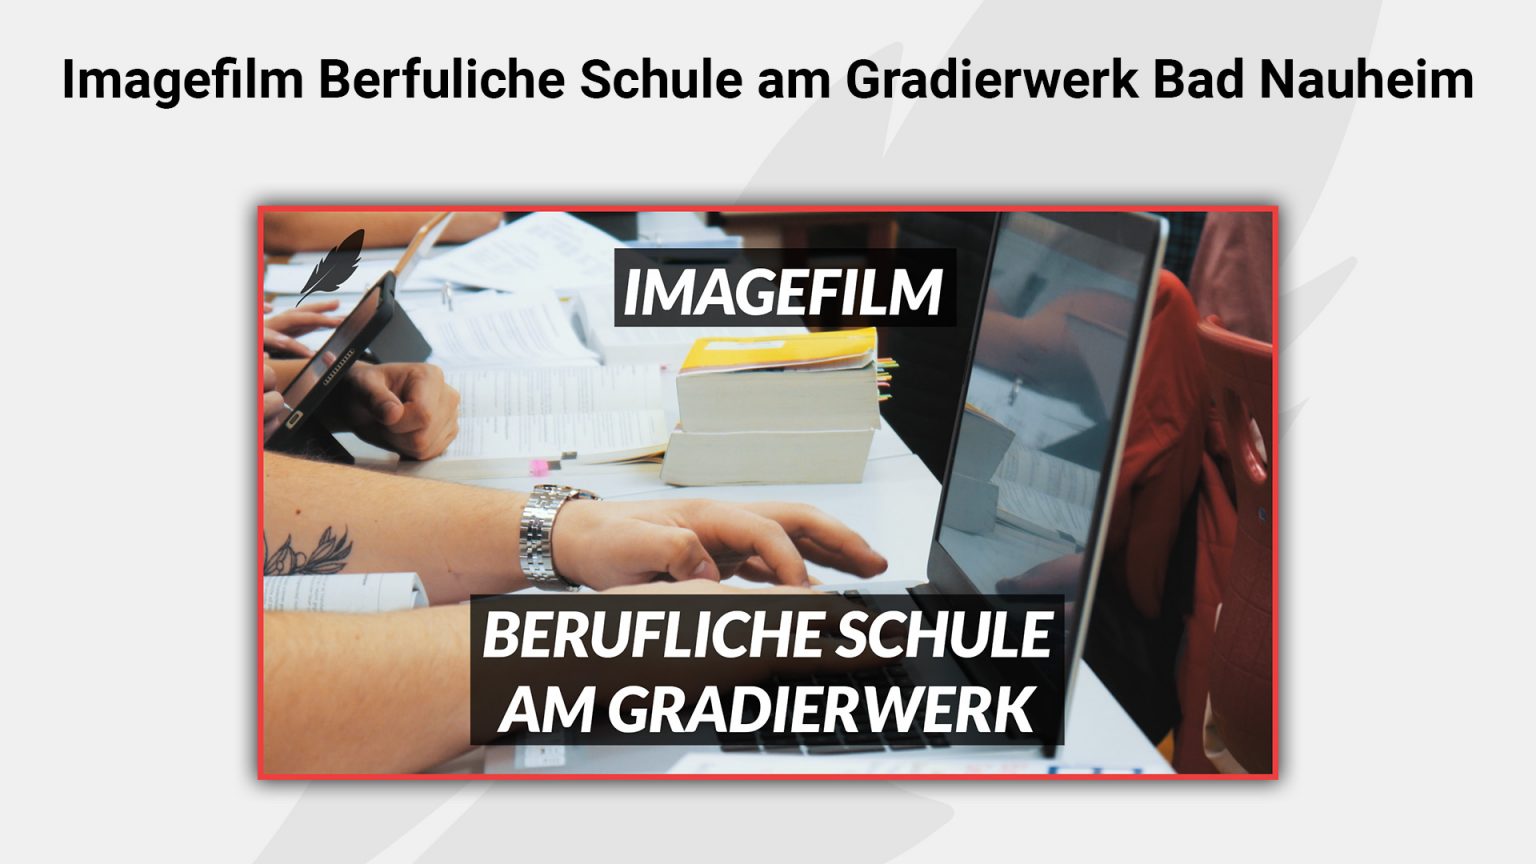 Imagefilm – Berufsschule am Gradierwerk Bad Nauheim